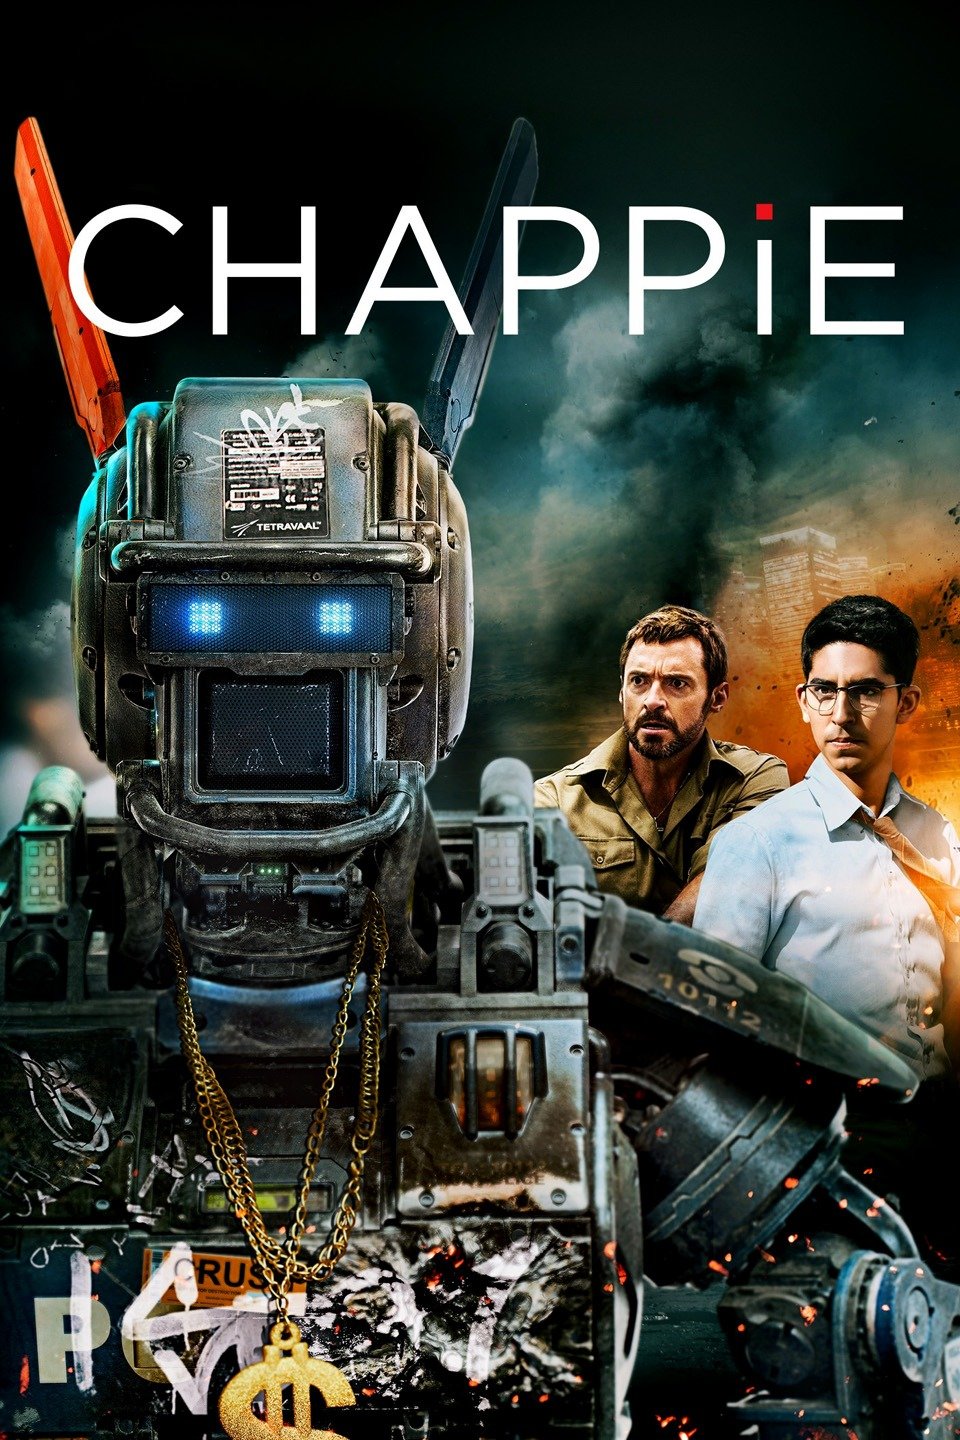 [MINI Super-HQ] Chappie (2015) จักรกลเปลี่ยนโลก [1080p] [พากย์ไทย 5.1 + เสียงอังกฤษ DTS] [บรรยายไทย + อังกฤษ] [เสียงไทย + ซับไทย] [OPENLOAD]